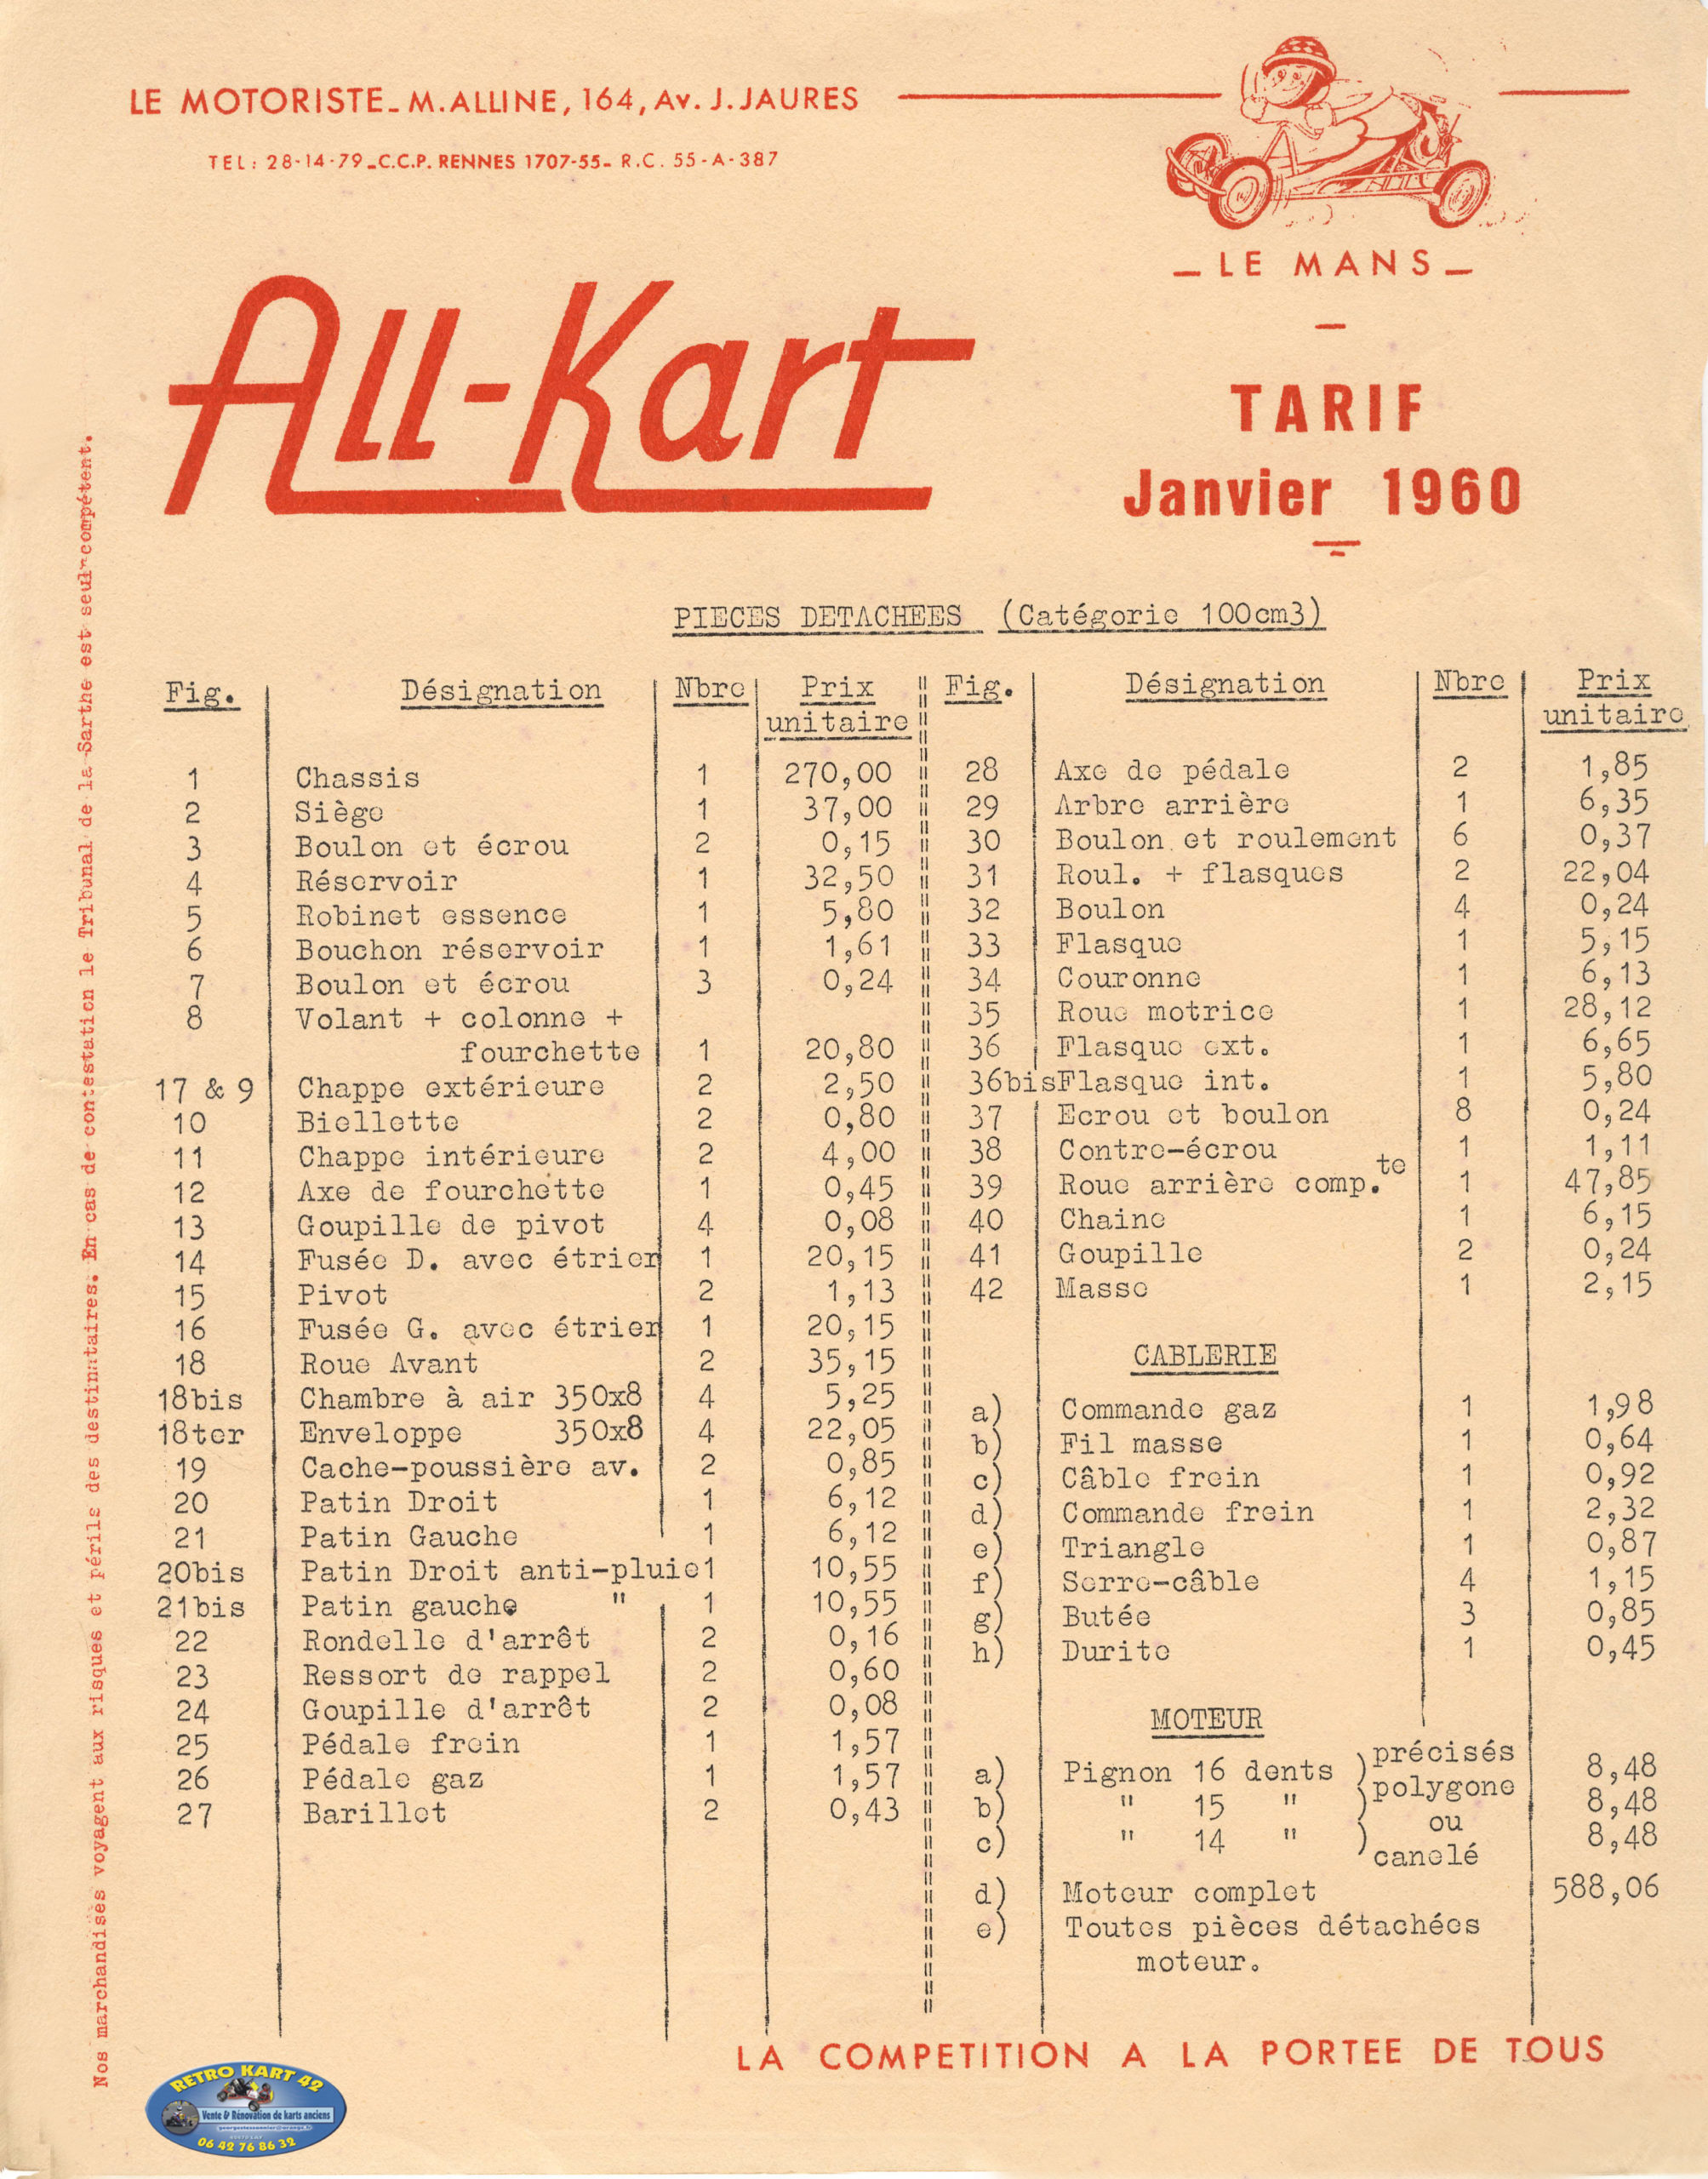 All-Kart,1960